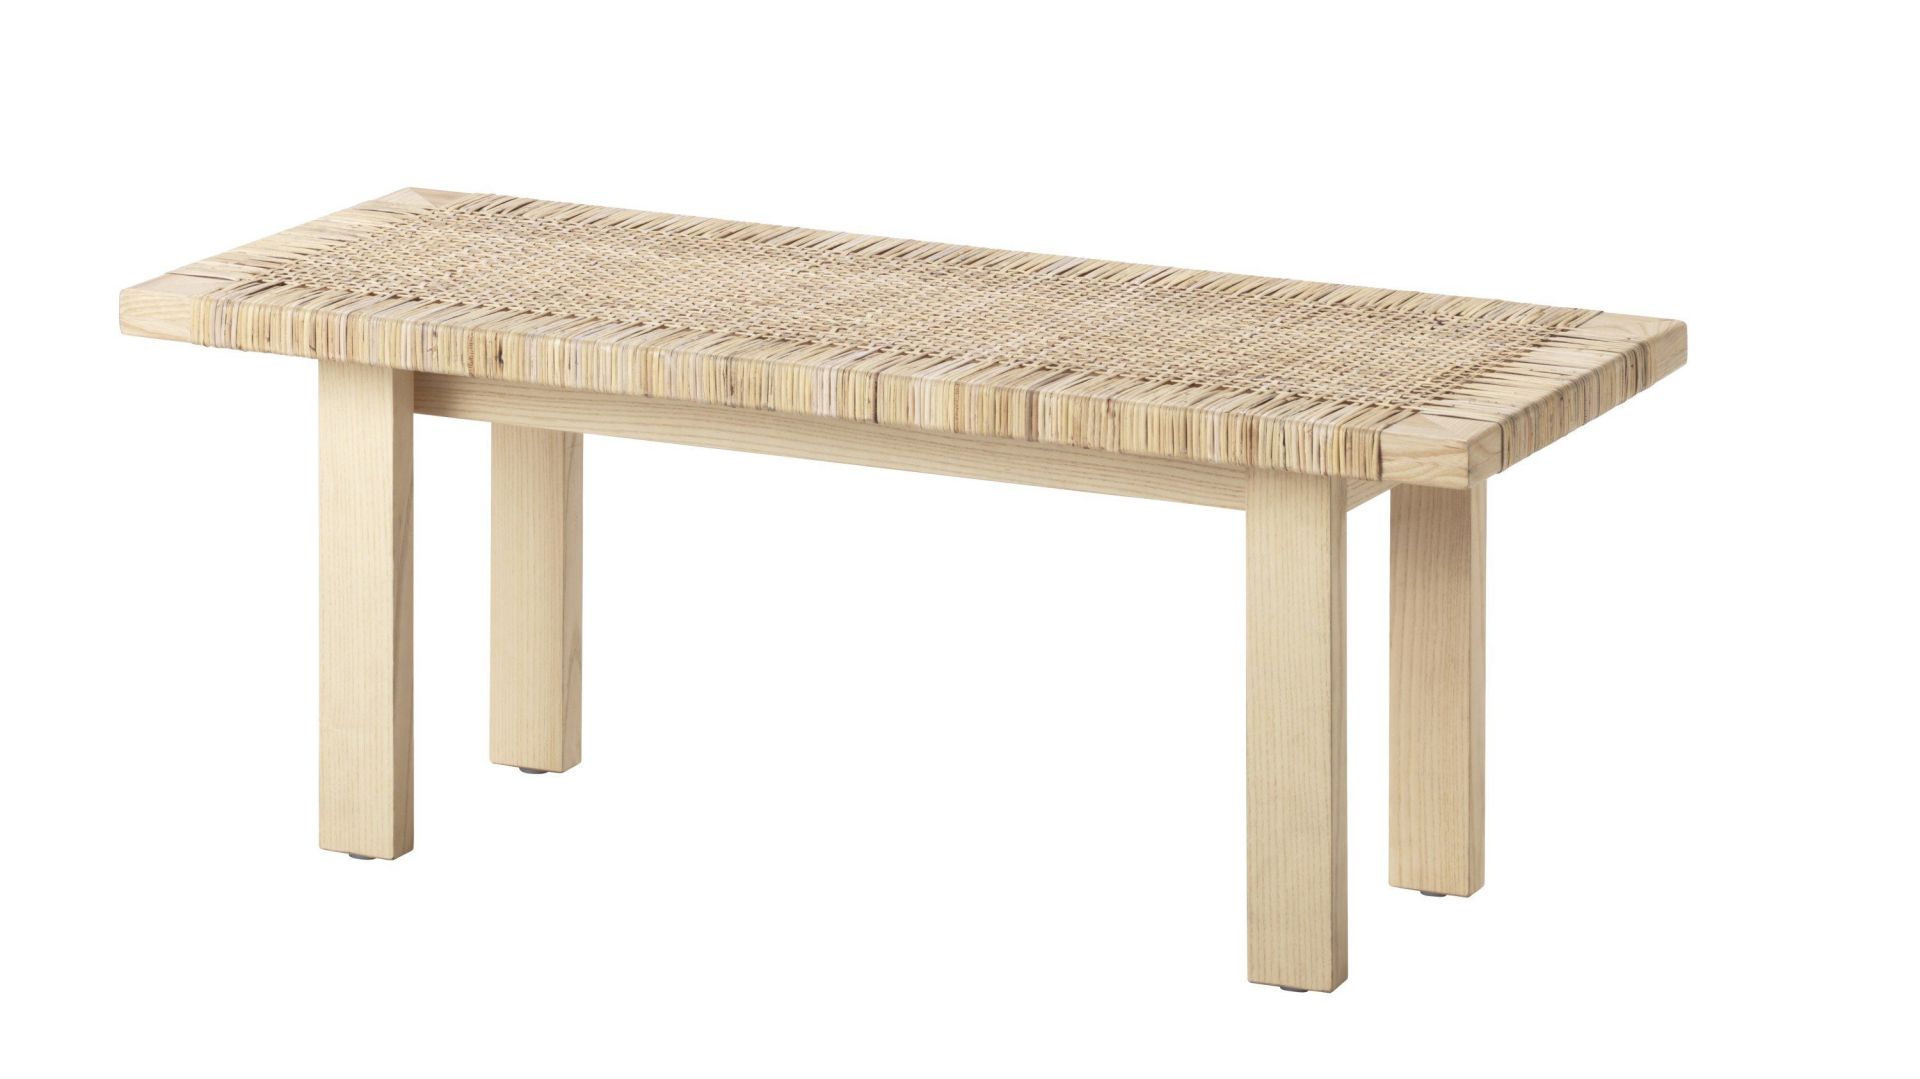 Stolik Stockholm z drewna, z wyplatanym blatem. Fot. IKEA